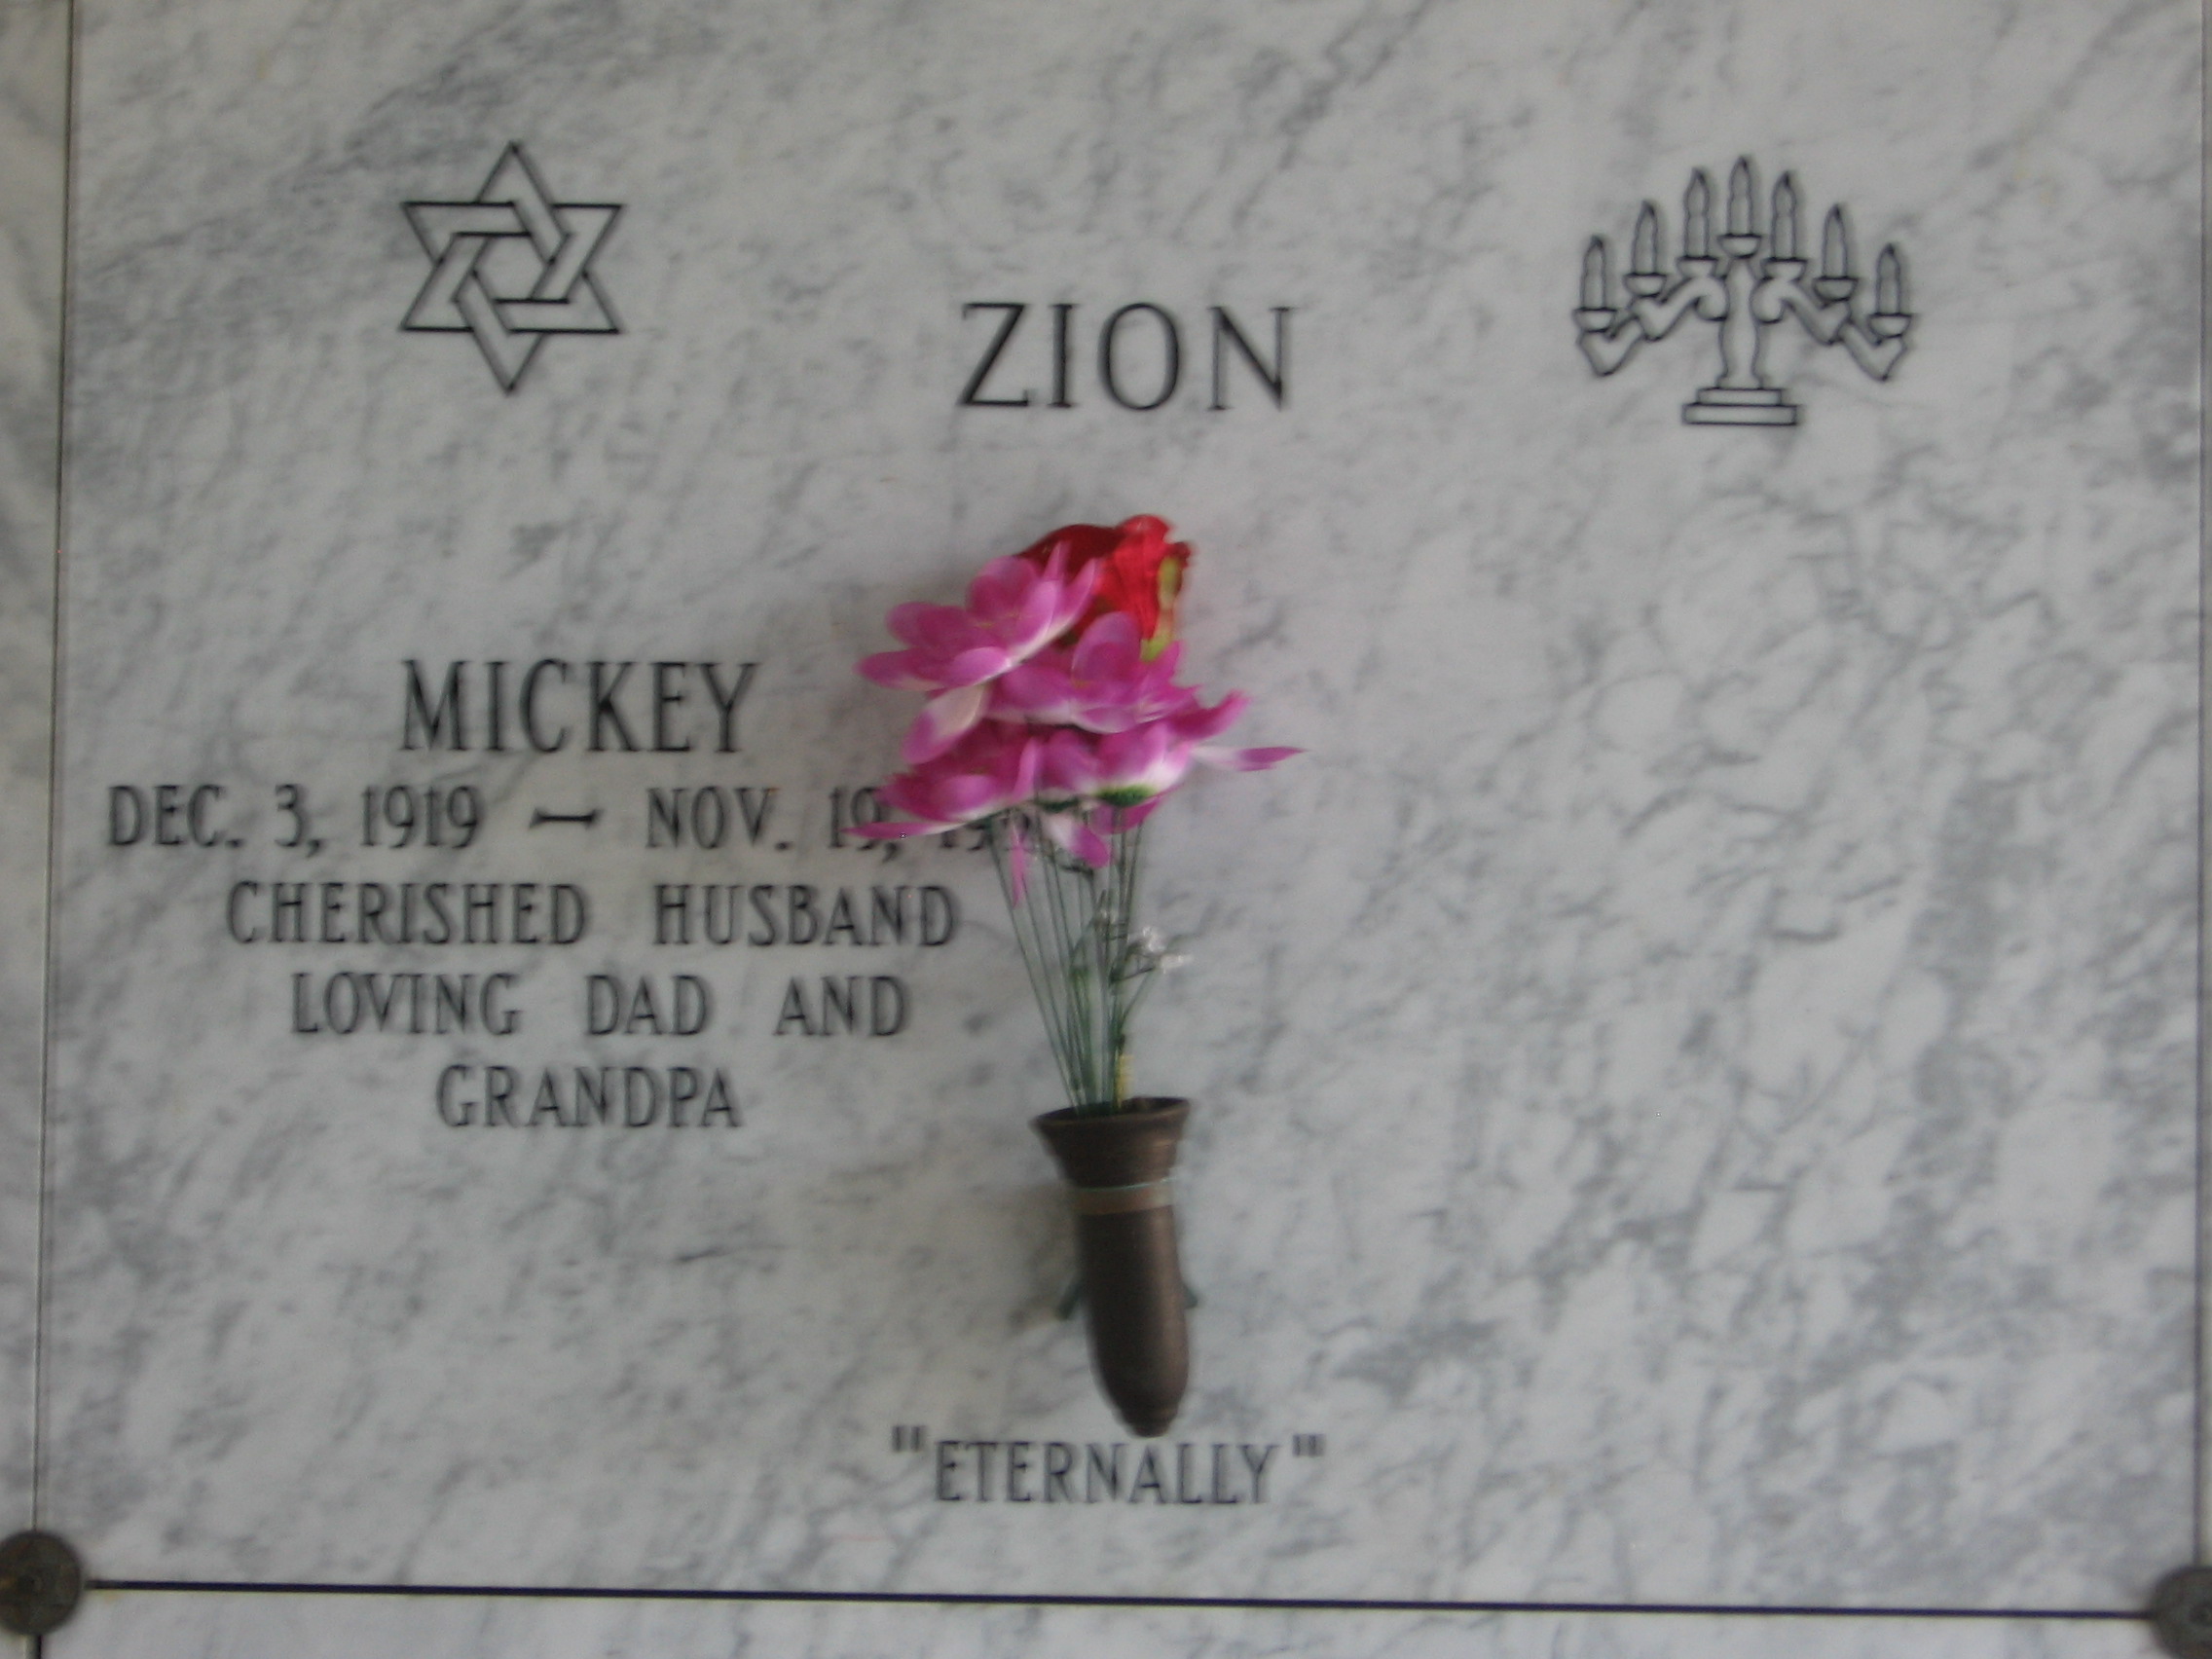 Mickey Zion